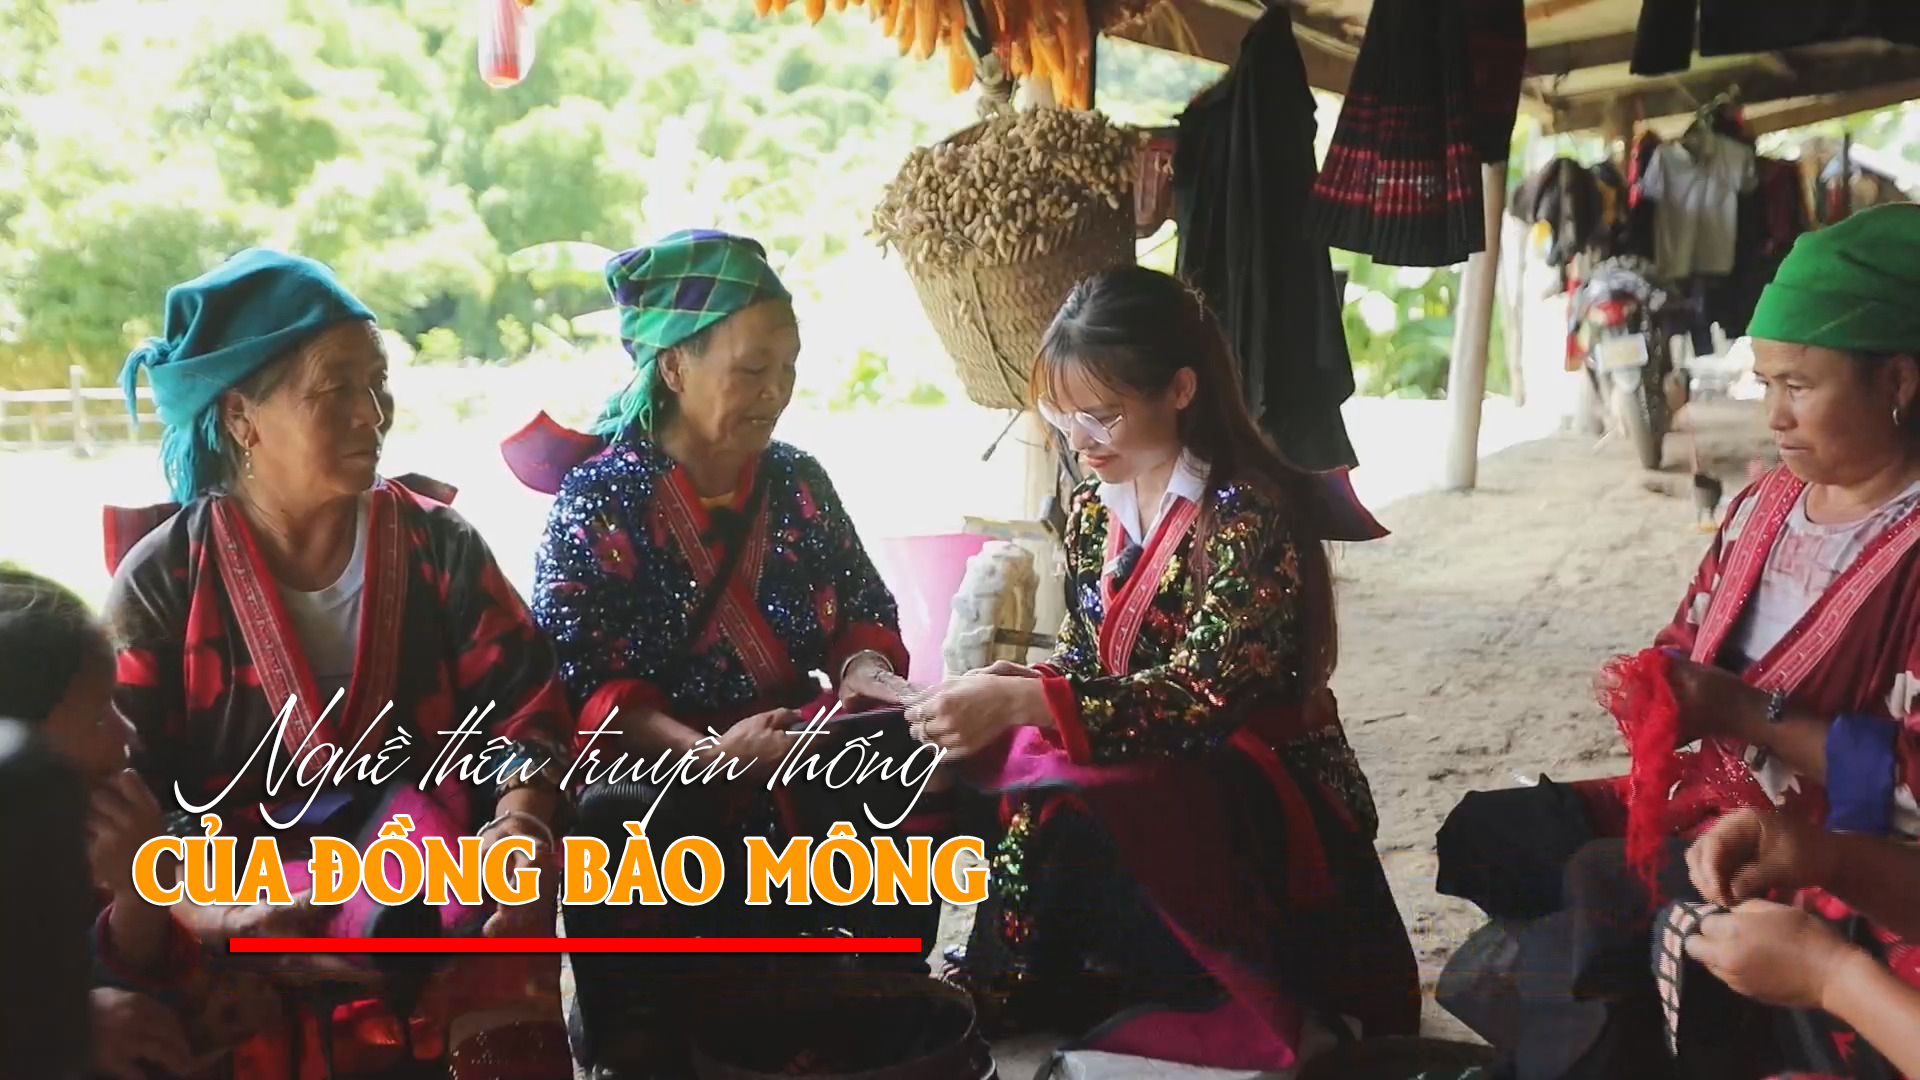 Đến Tà Là Cáo trải nghiệm nghề thêu truyền thống của đồng bào Mông